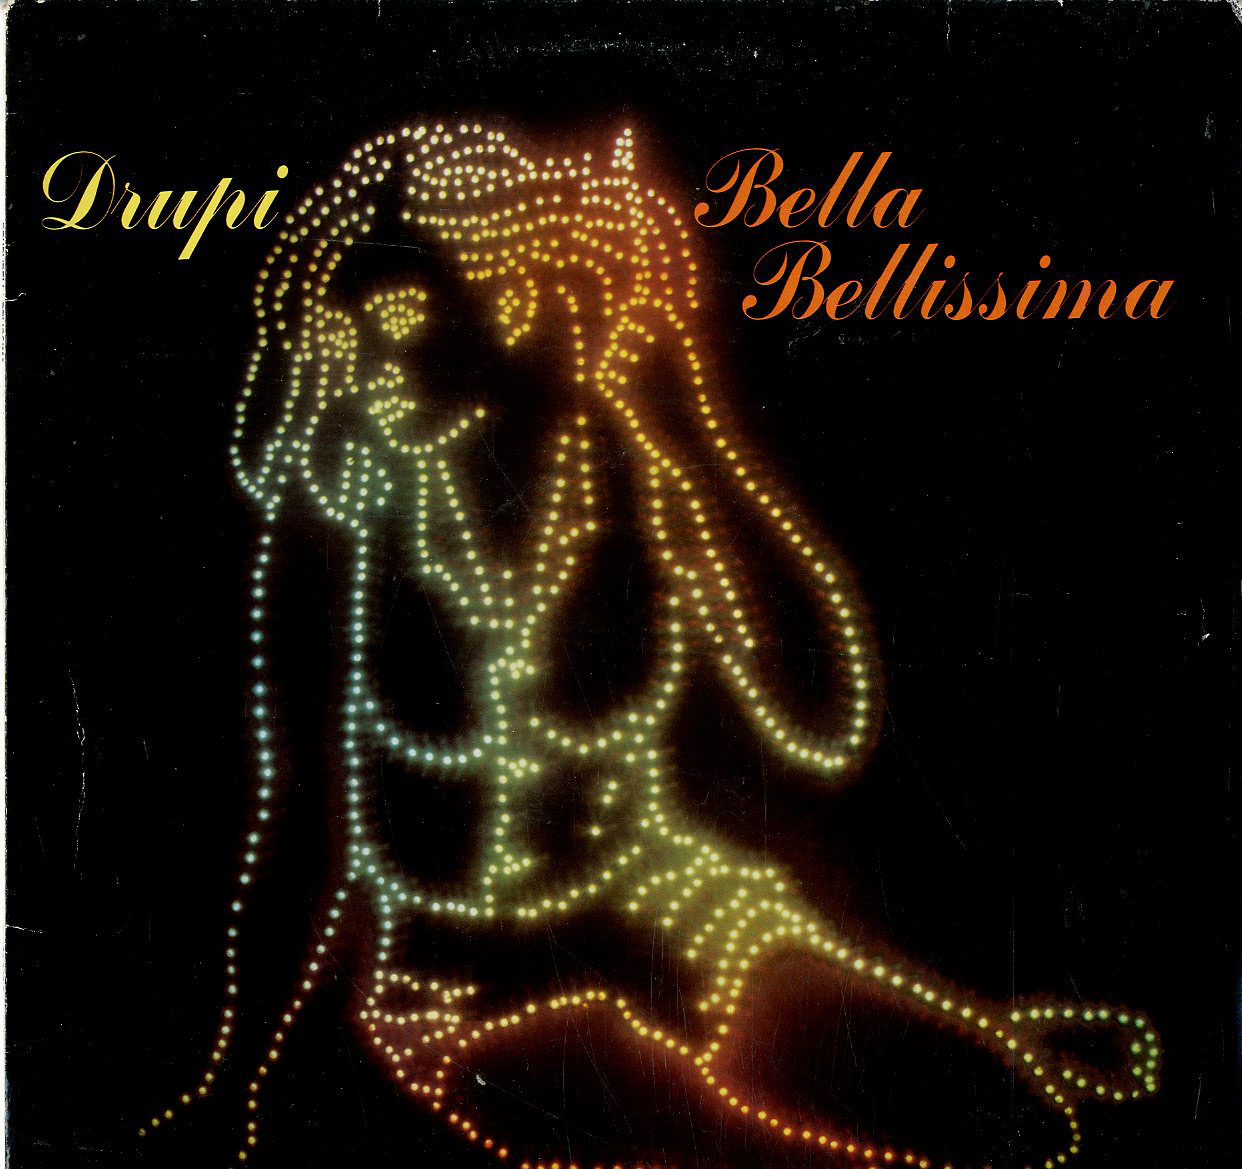 Albumcover Drupi - Bella Belissima